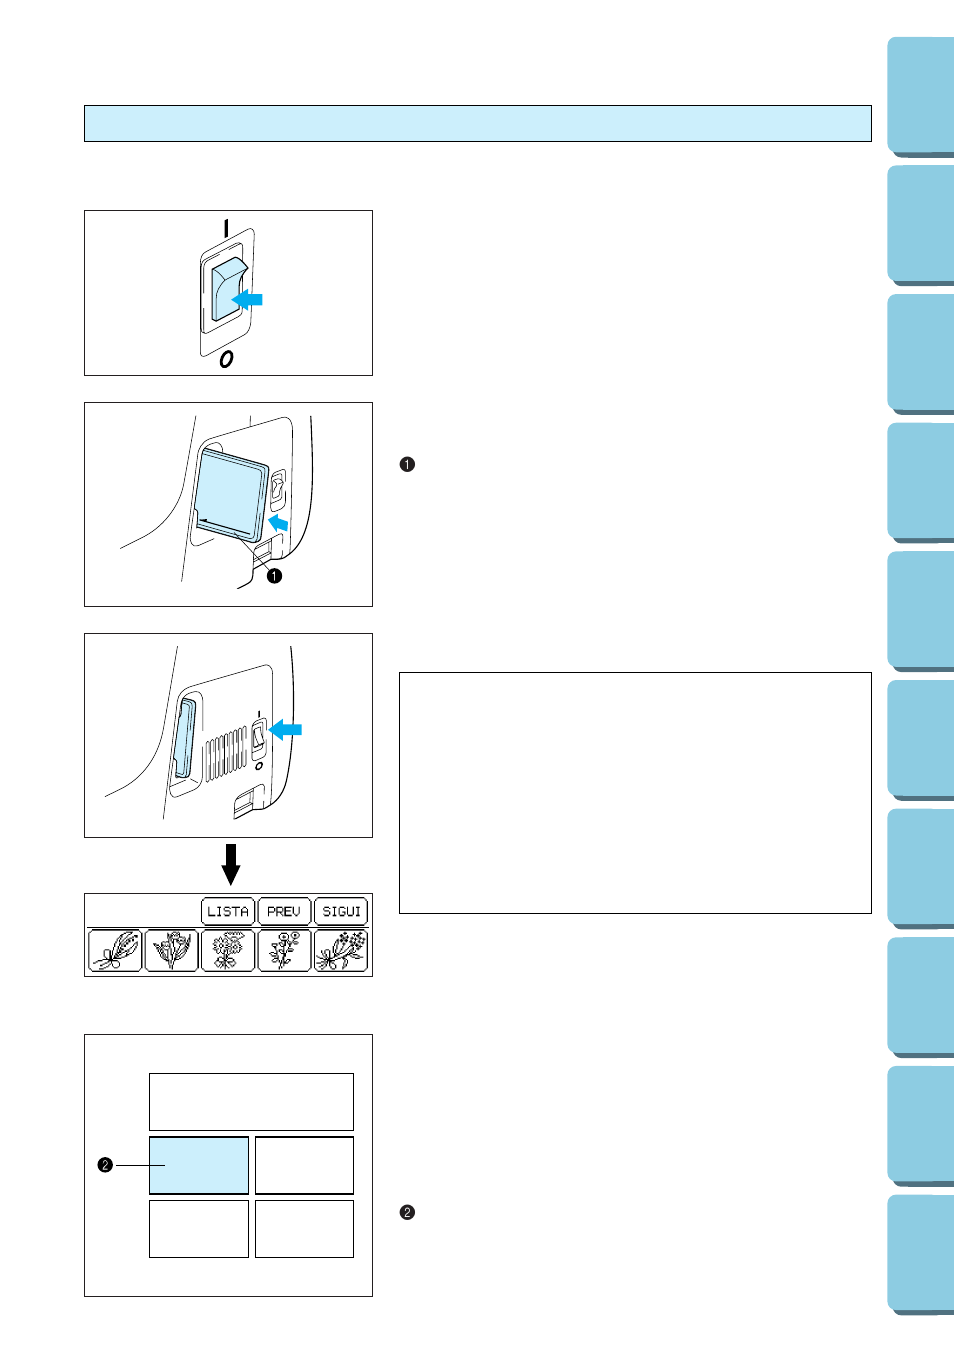 Selección de patrones de una tarjeta de memoria, Importante | Brother PE 150  User Manual | Page 115 / 146 | Original mode